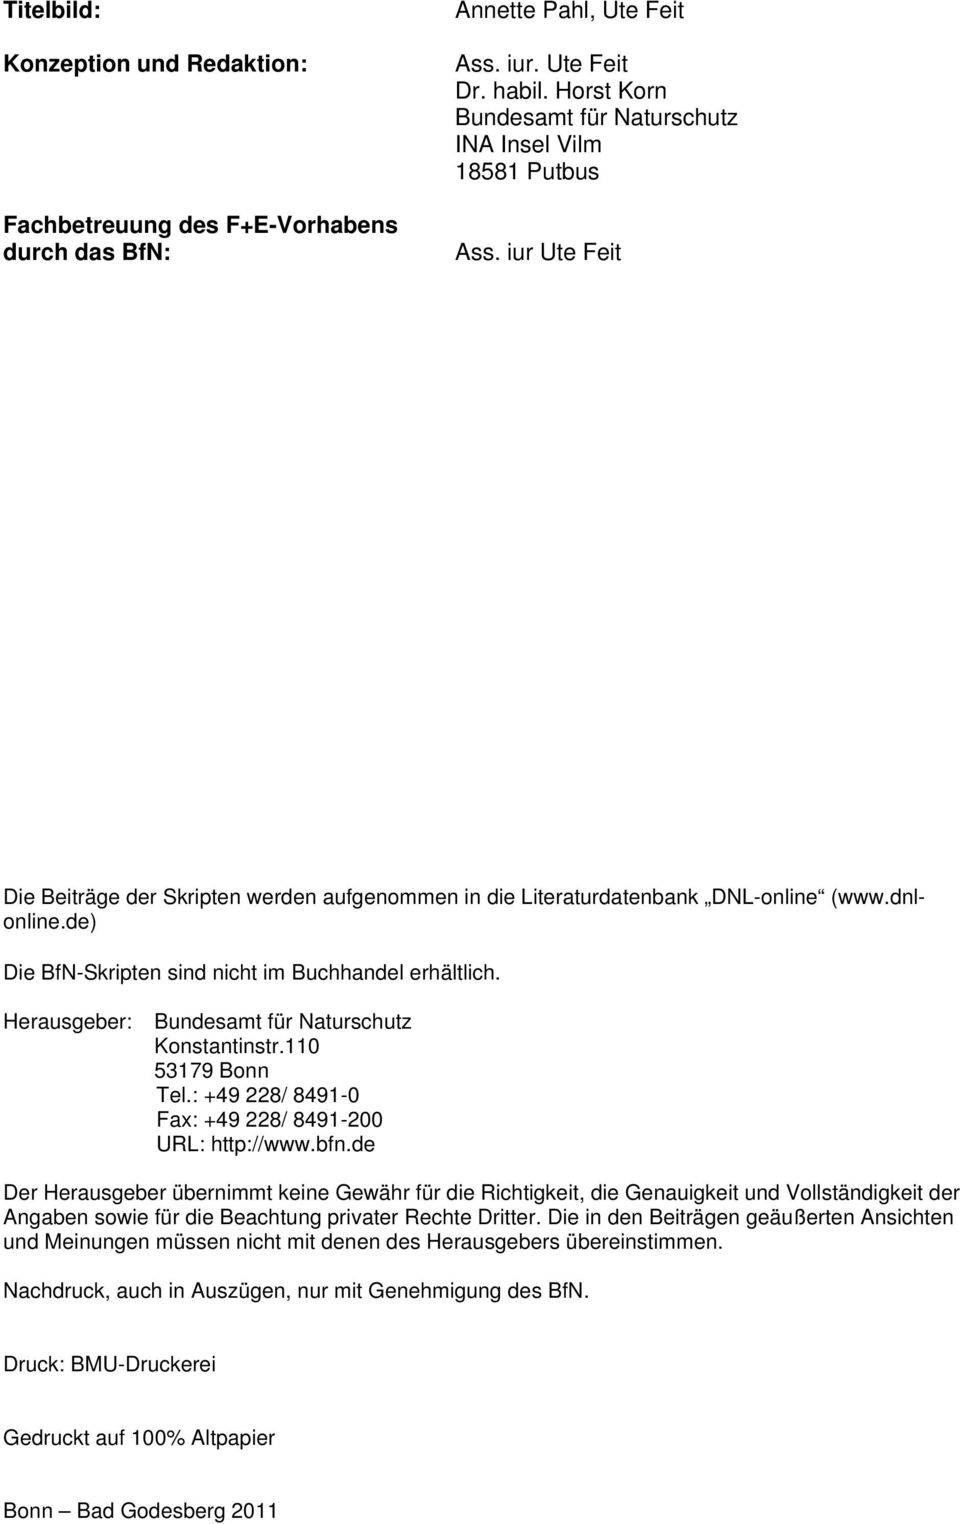 de) Die BfN-Skripten sind nicht im Buchhandel erhältlich. Herausgeber: Bundesamt für Naturschutz Konstantinstr.110 53179 Bonn Tel.: +49 228/ 8491-0 Fax: +49 228/ 8491-200 URL: http://www.bfn.